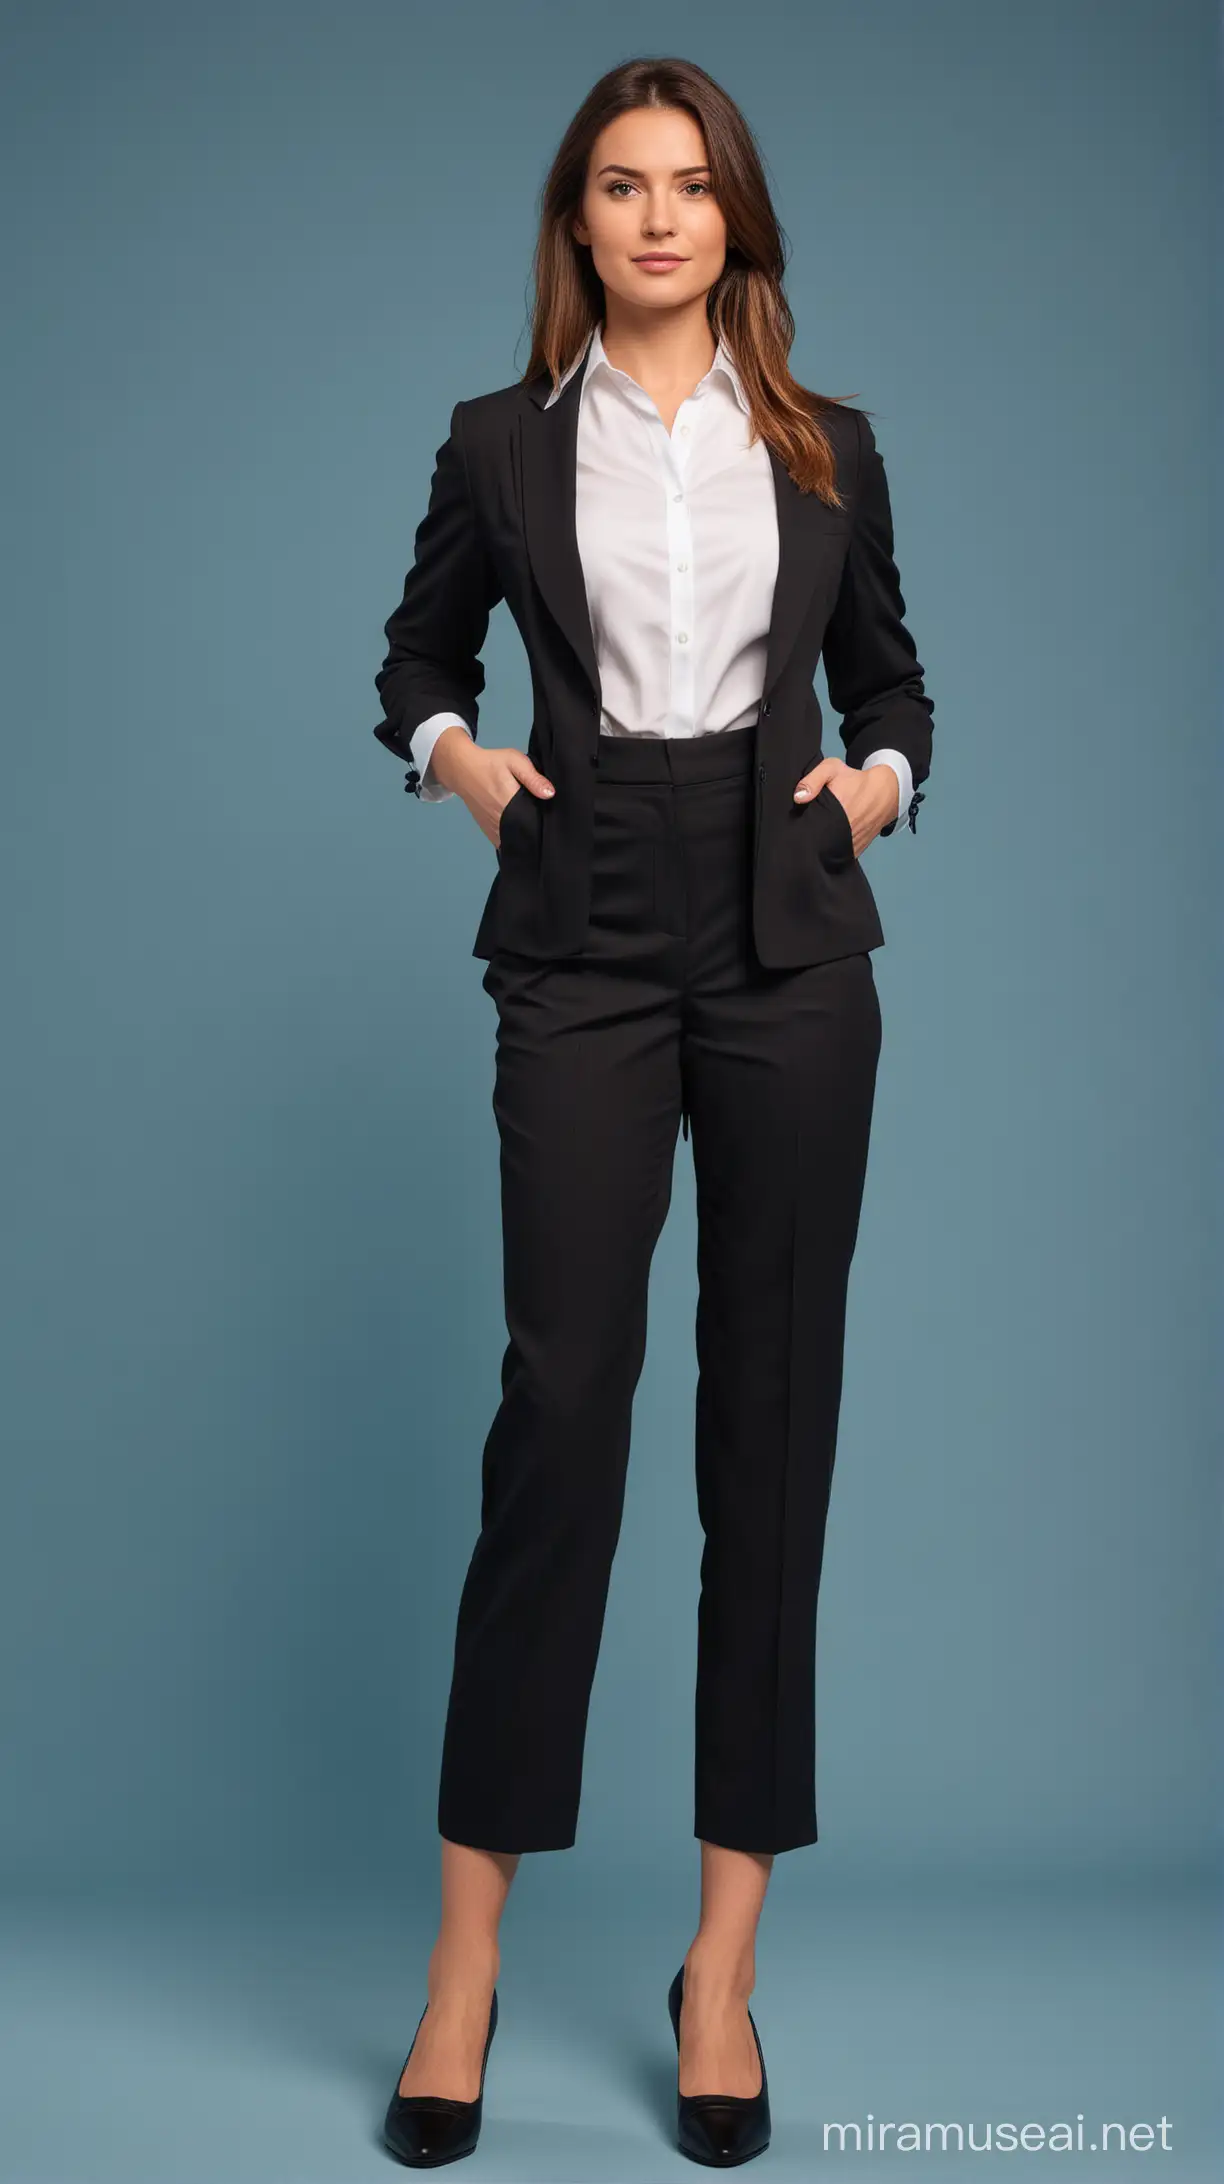 wanita karir, kemeja putih, rangkap jas hitam, celana panjang hitam formal, sepatu pantofel, pose foto berdiri tegap, profesional, fullbody, background biru